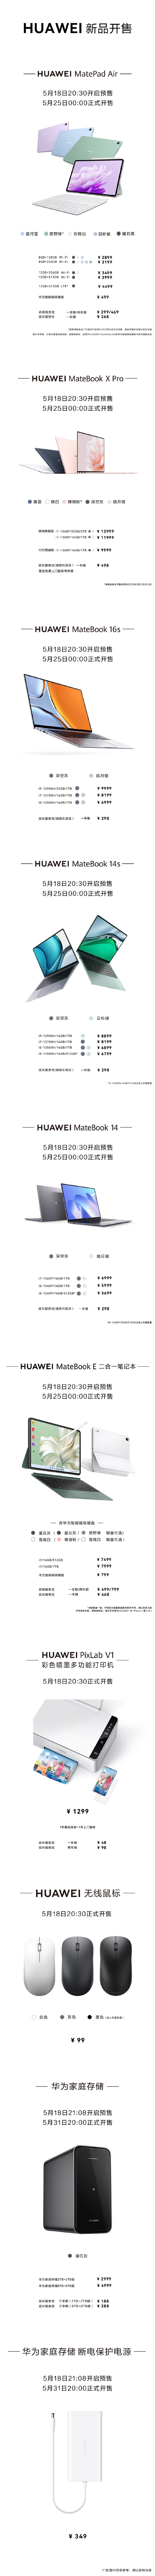 华为十大新品价格汇总：MateBook X Pro笔记本顶配1.4万元